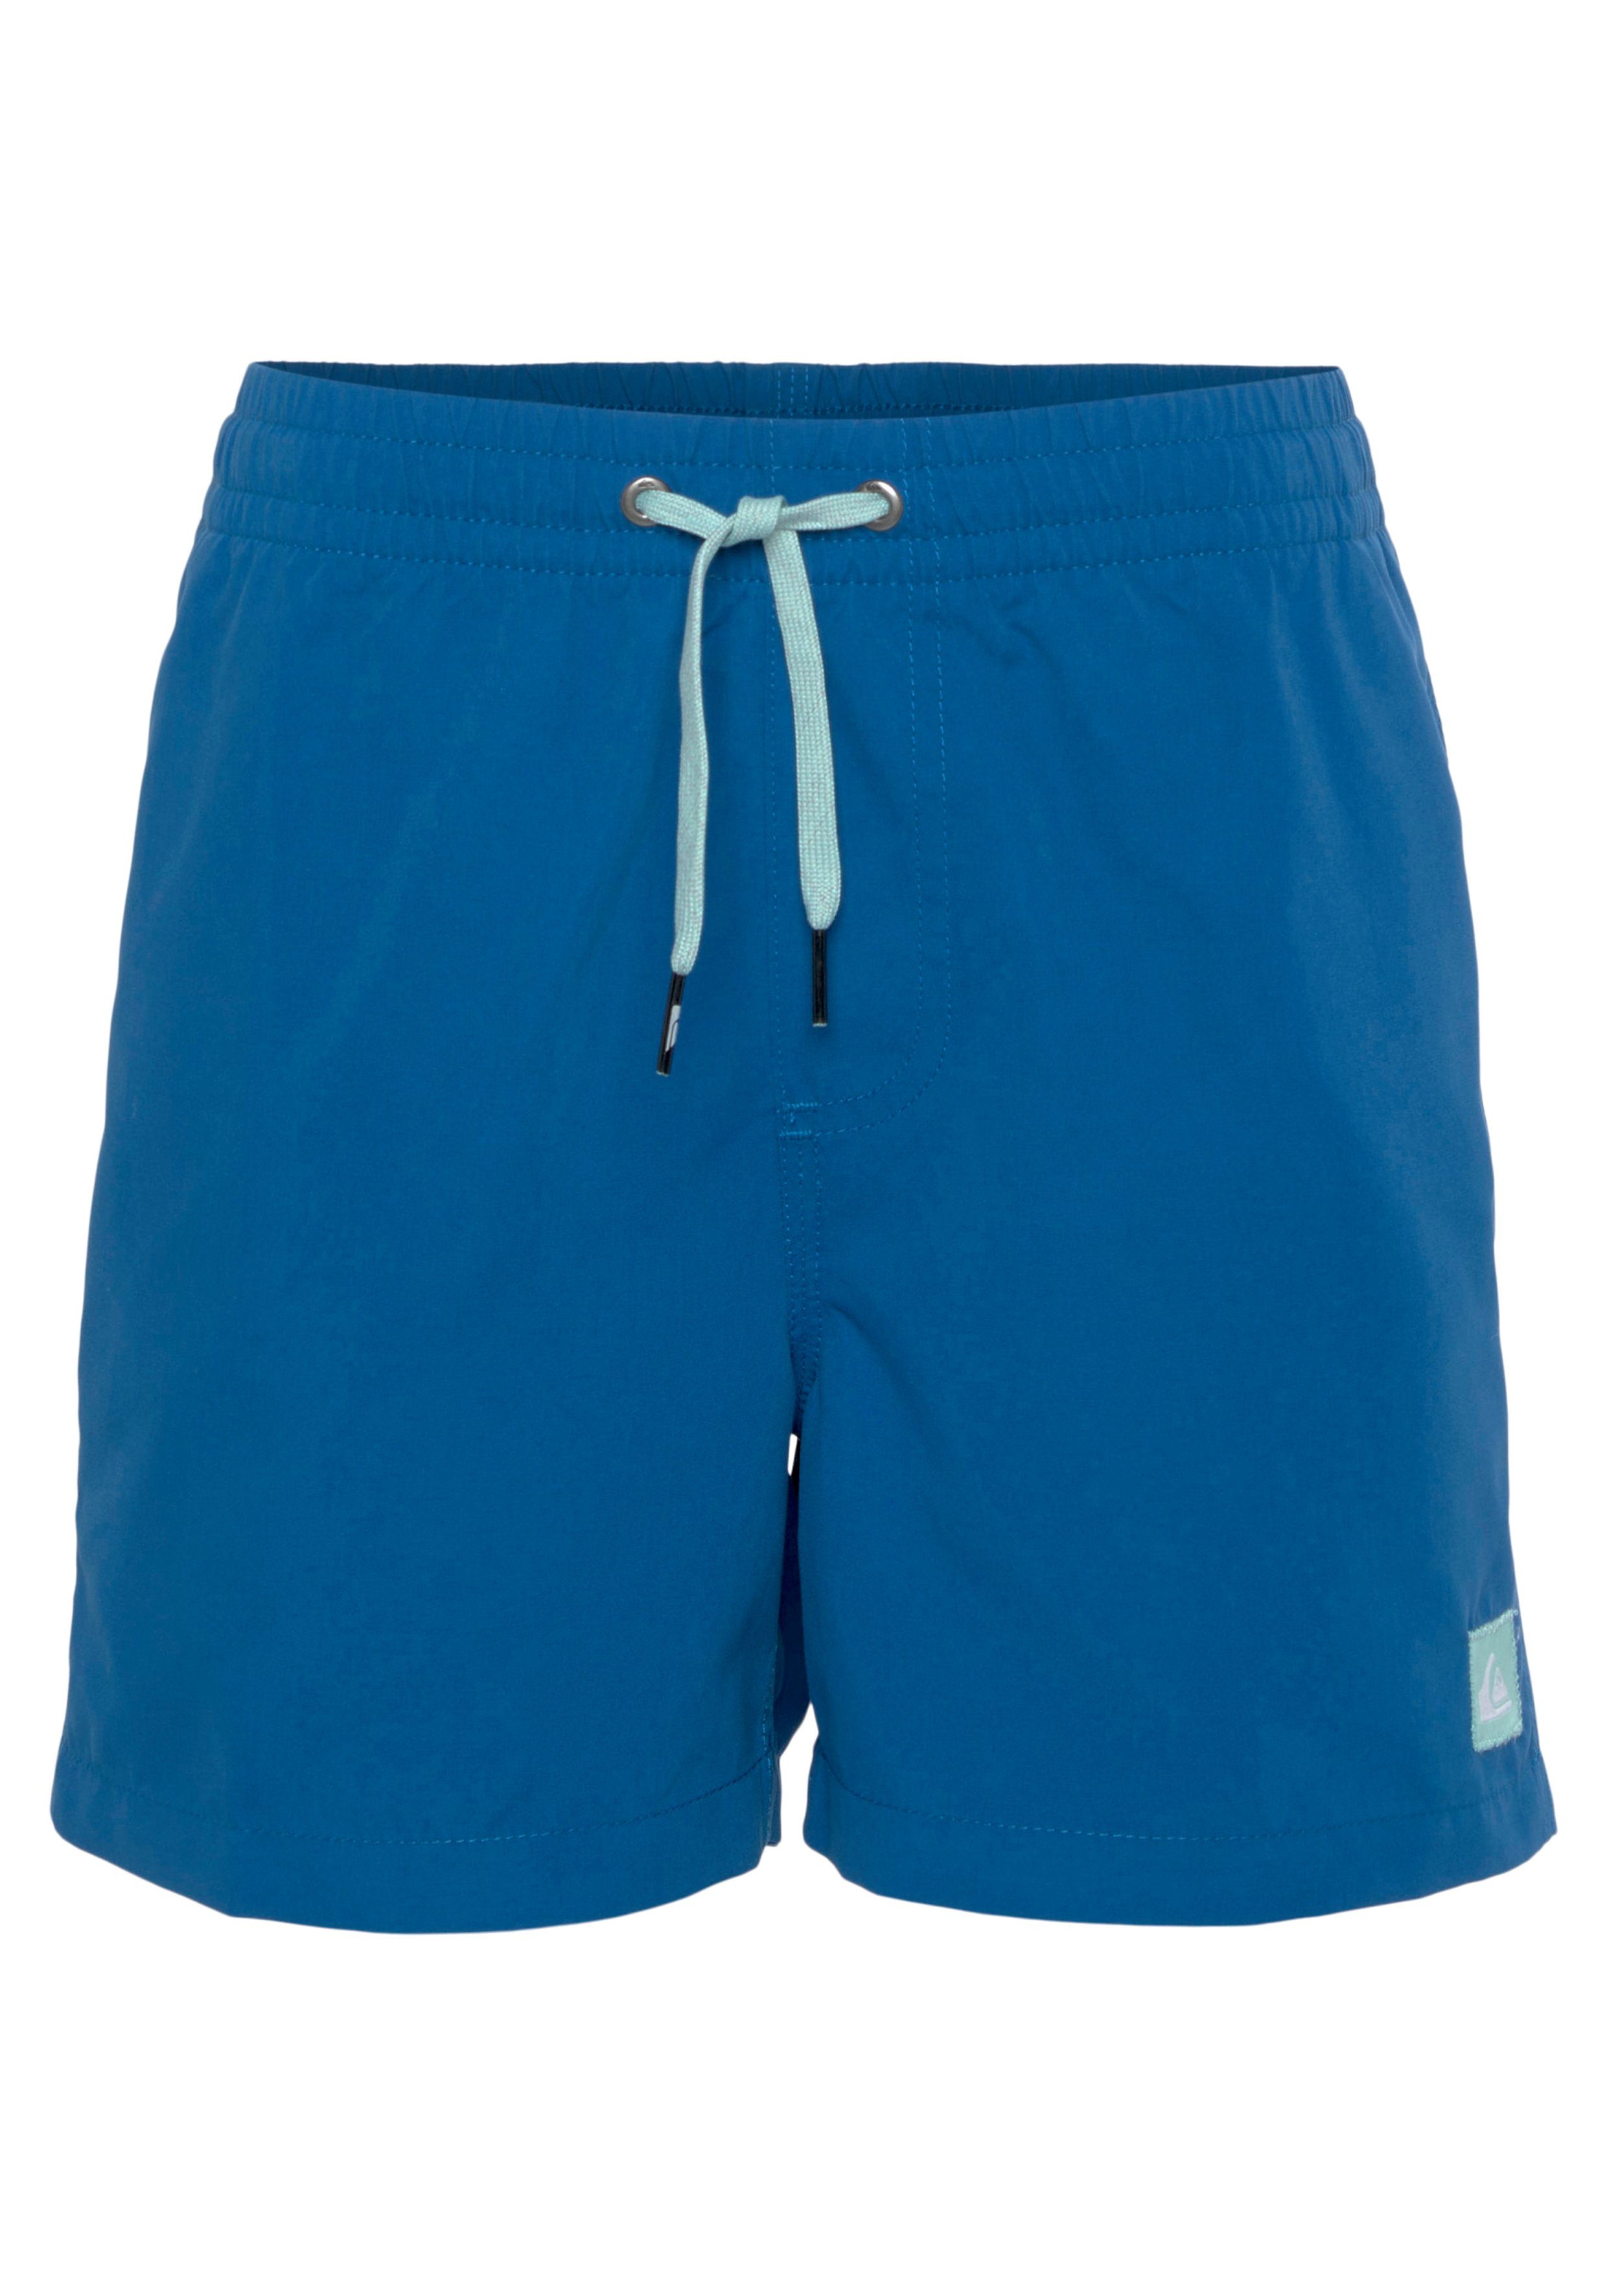 blue brt0-snorkel Quiksilver Badeshorts Jungen und Shorts Beach Swim